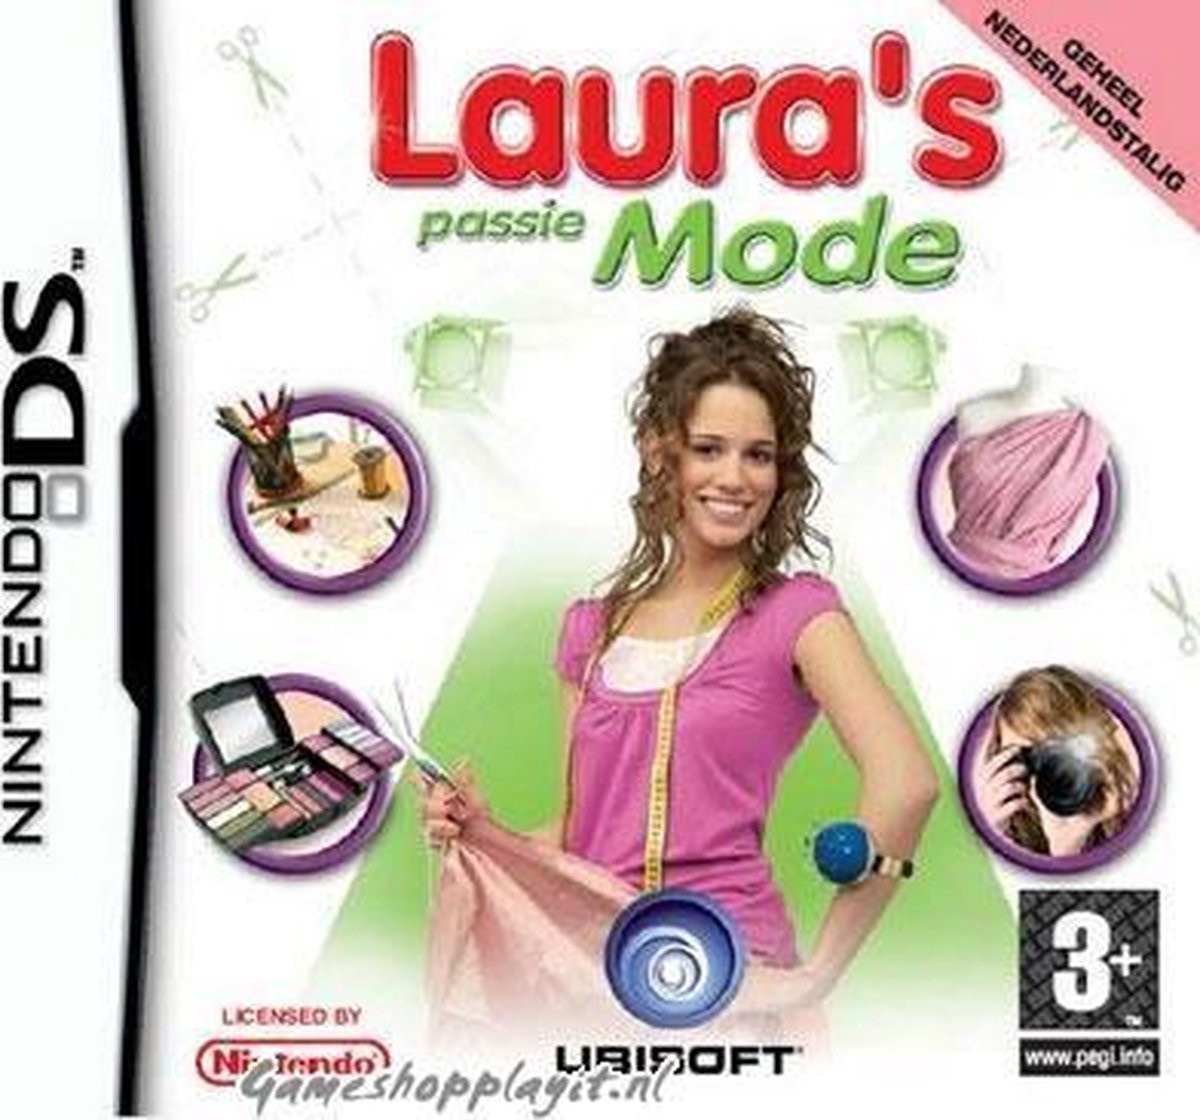 Laura's Passie Mode Kopen | Nintendo DS Games